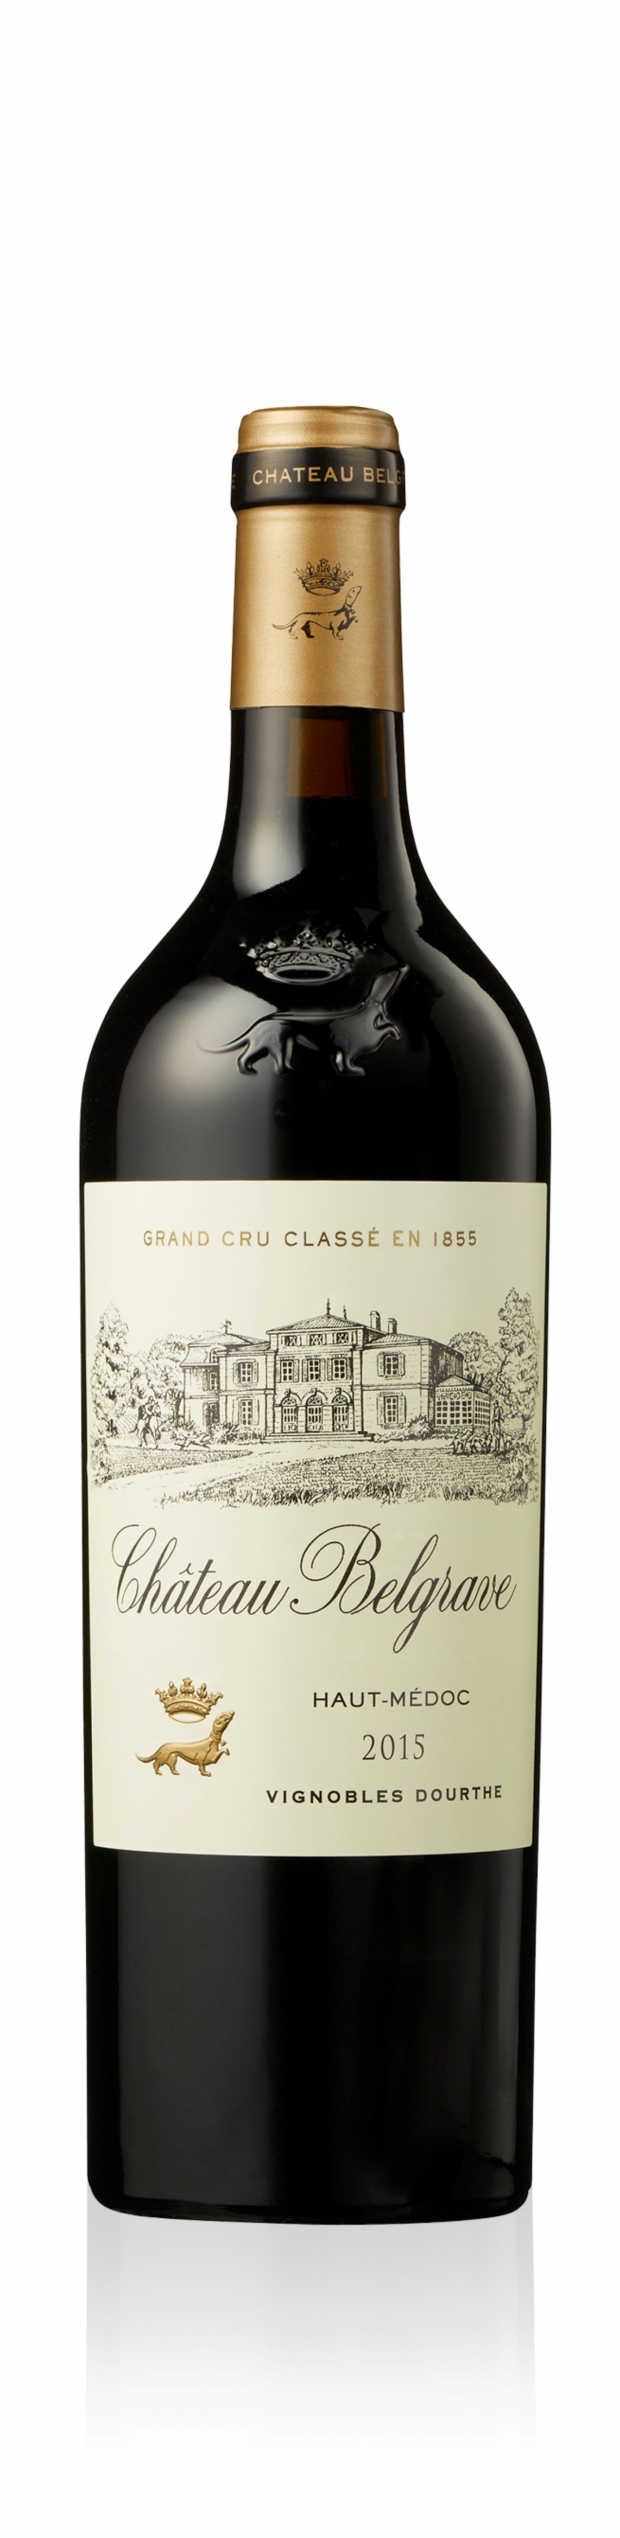 하이트진로, 보르도 그랑크뤼클라쎄 5등급 와인 ‘샤또 벨그라브2015’ 독점 출시